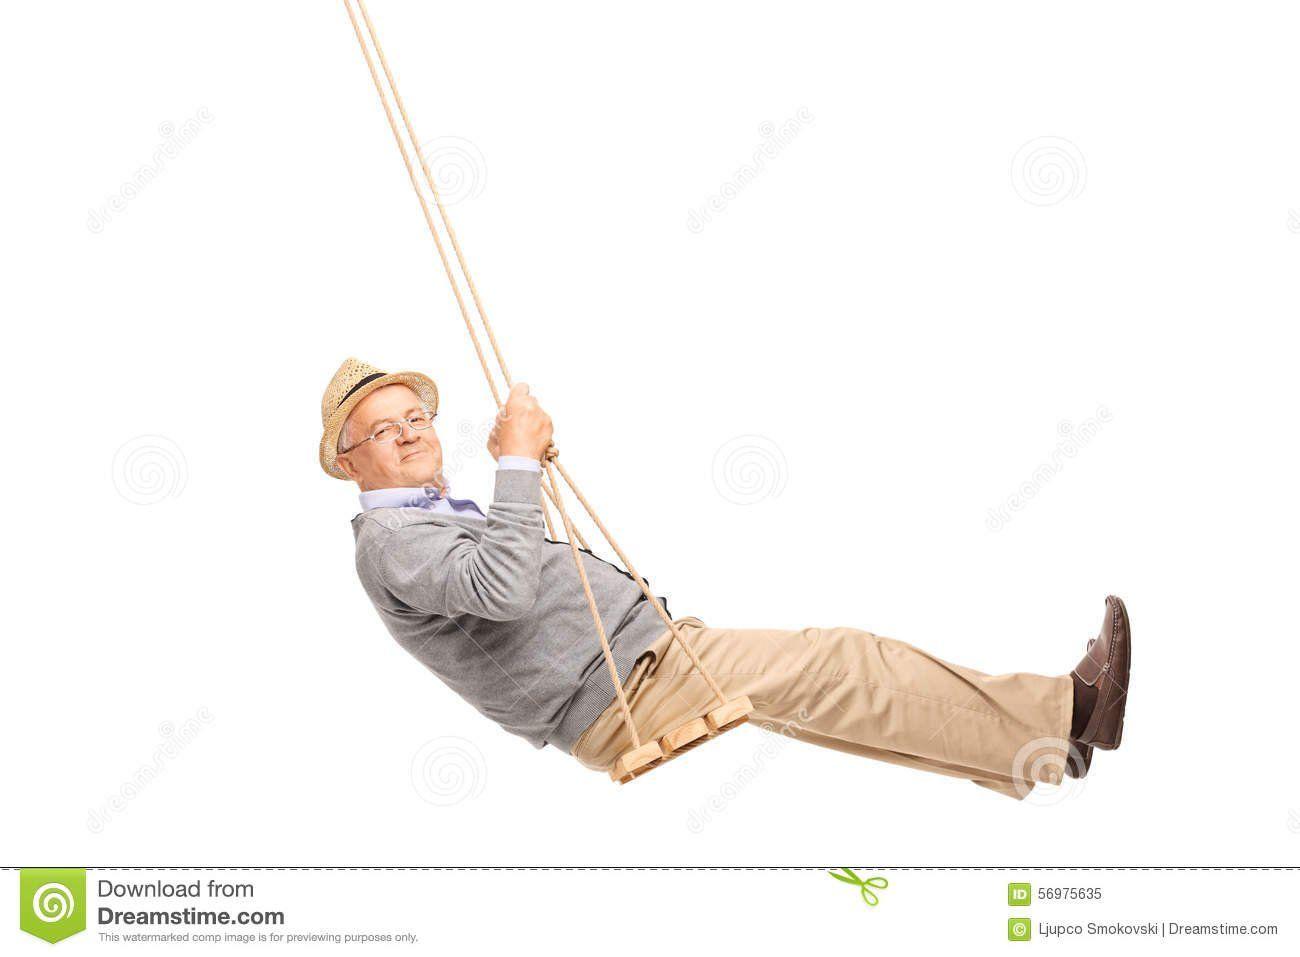 I agreed to swinging